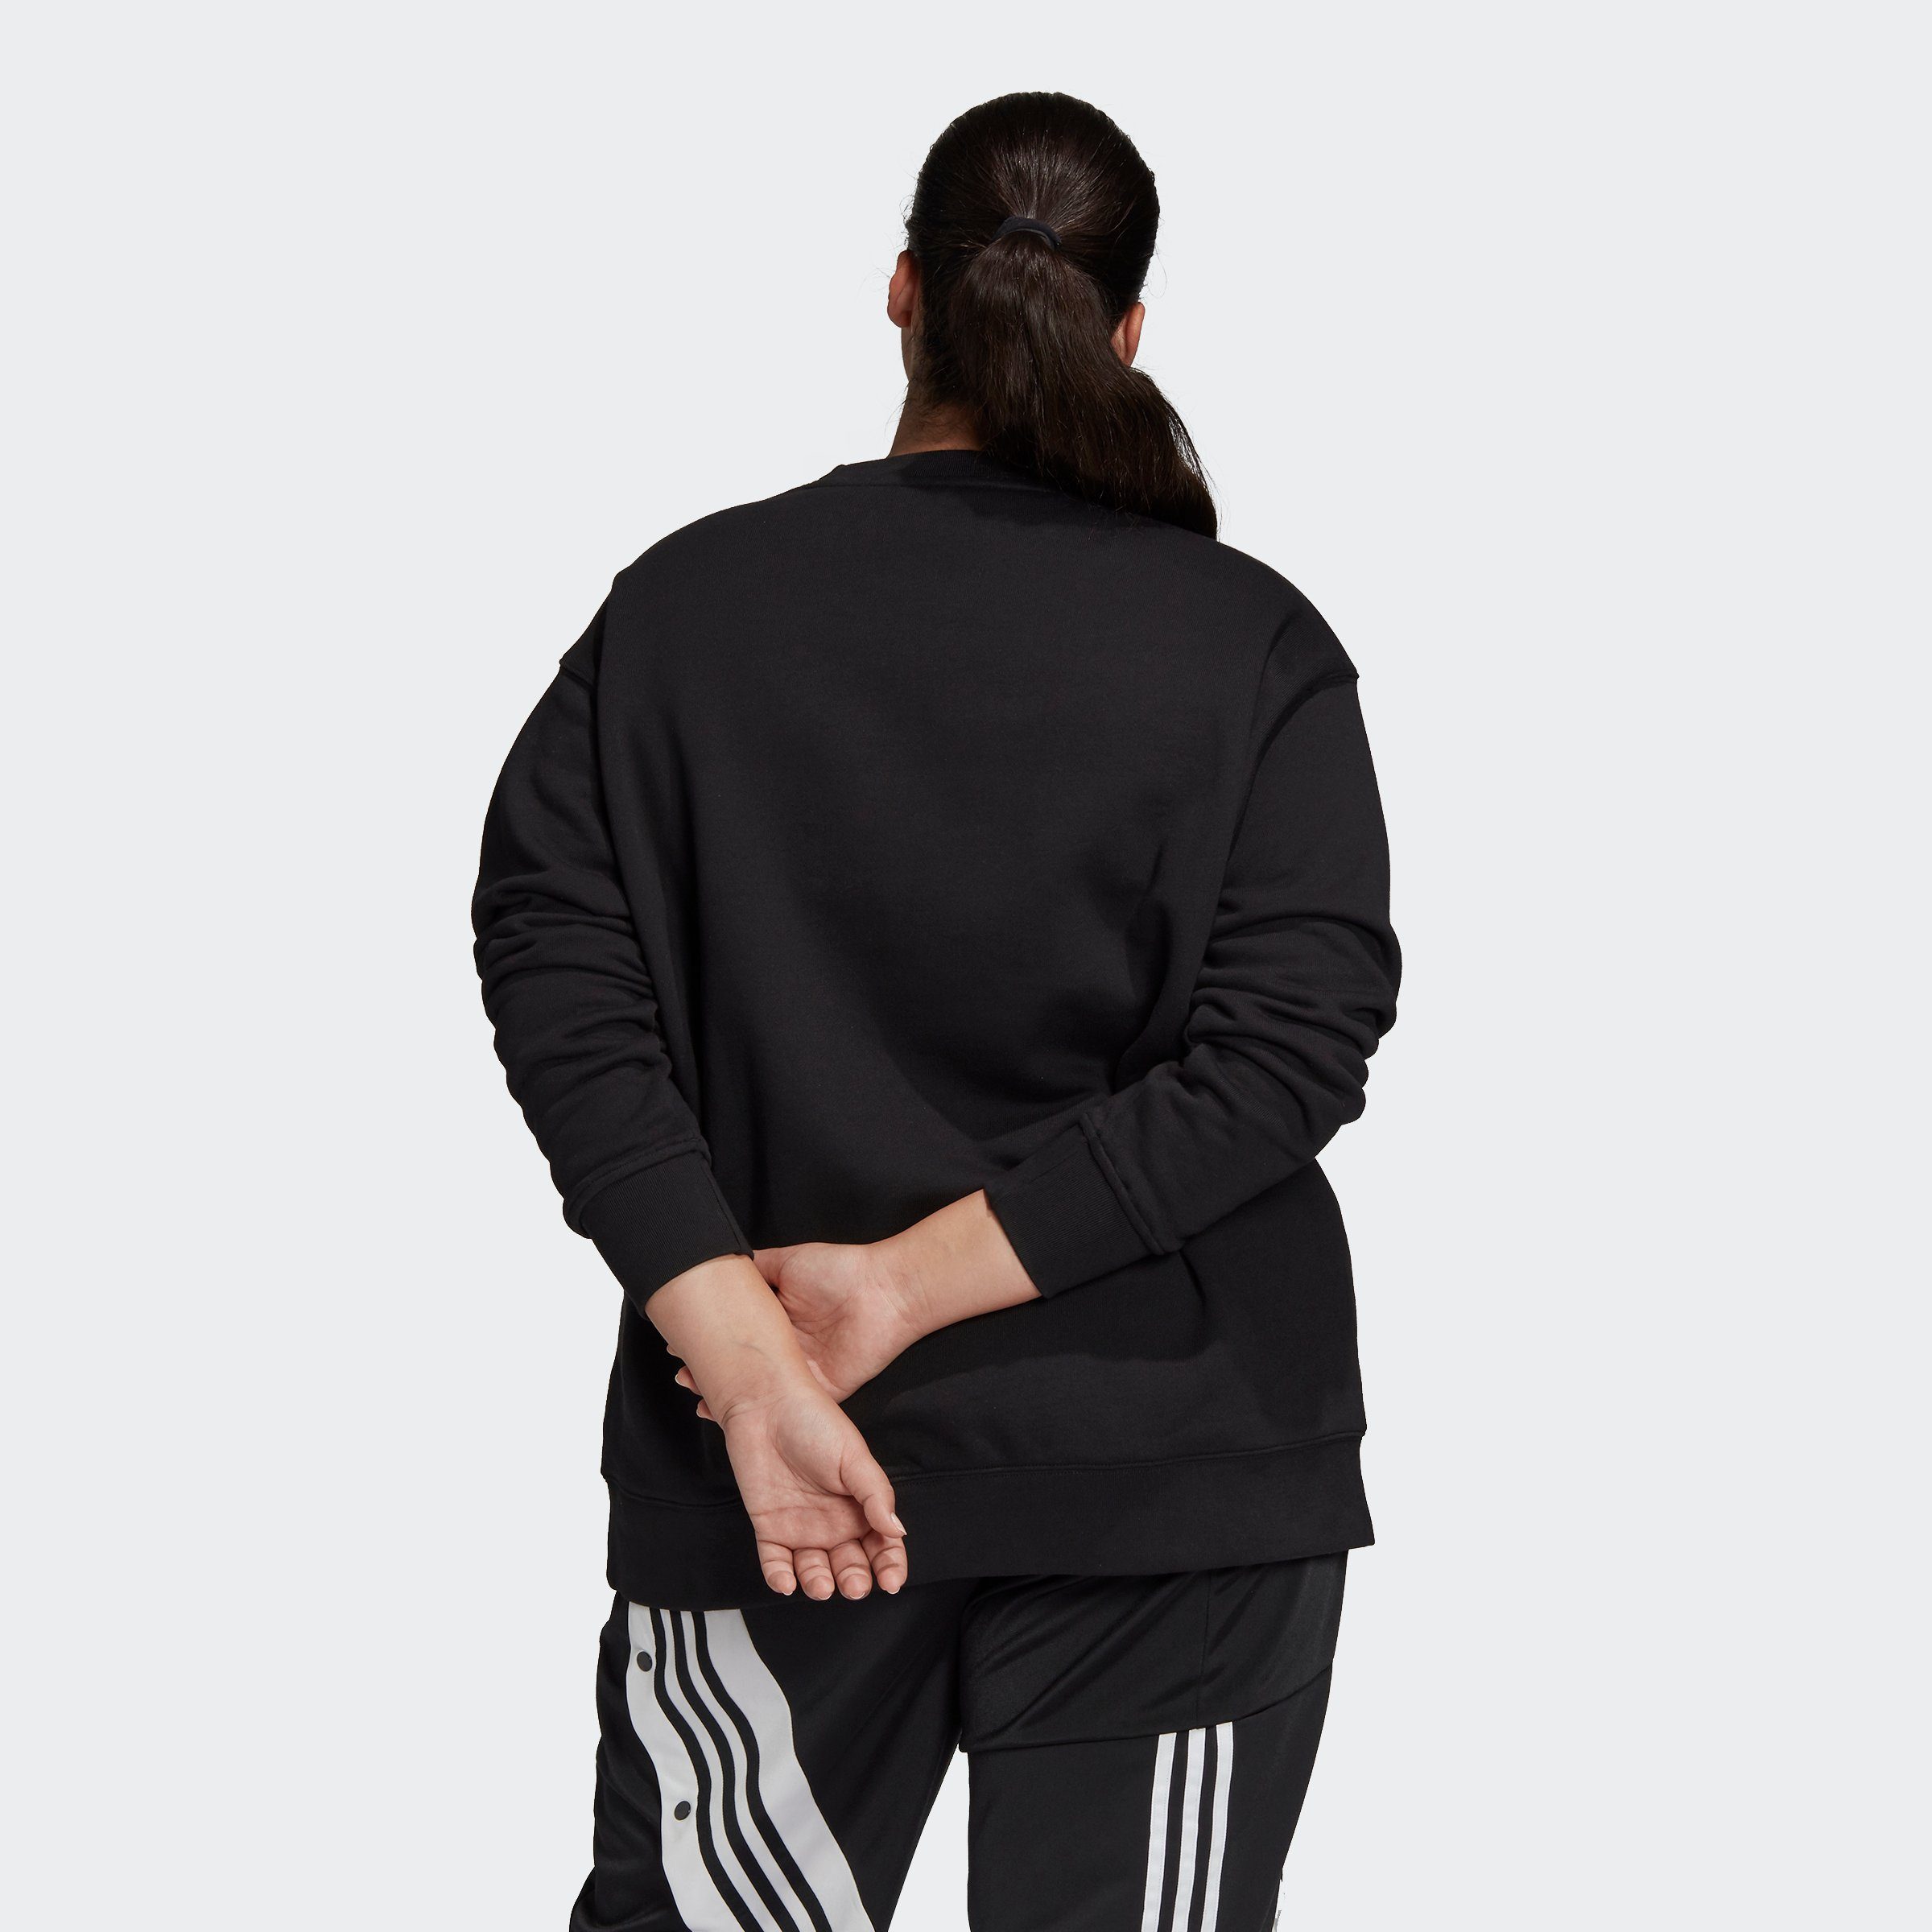 GRÖSSEN adidas BLACK/WHITE Sweatshirt – TREFOIL Originals GROSSE